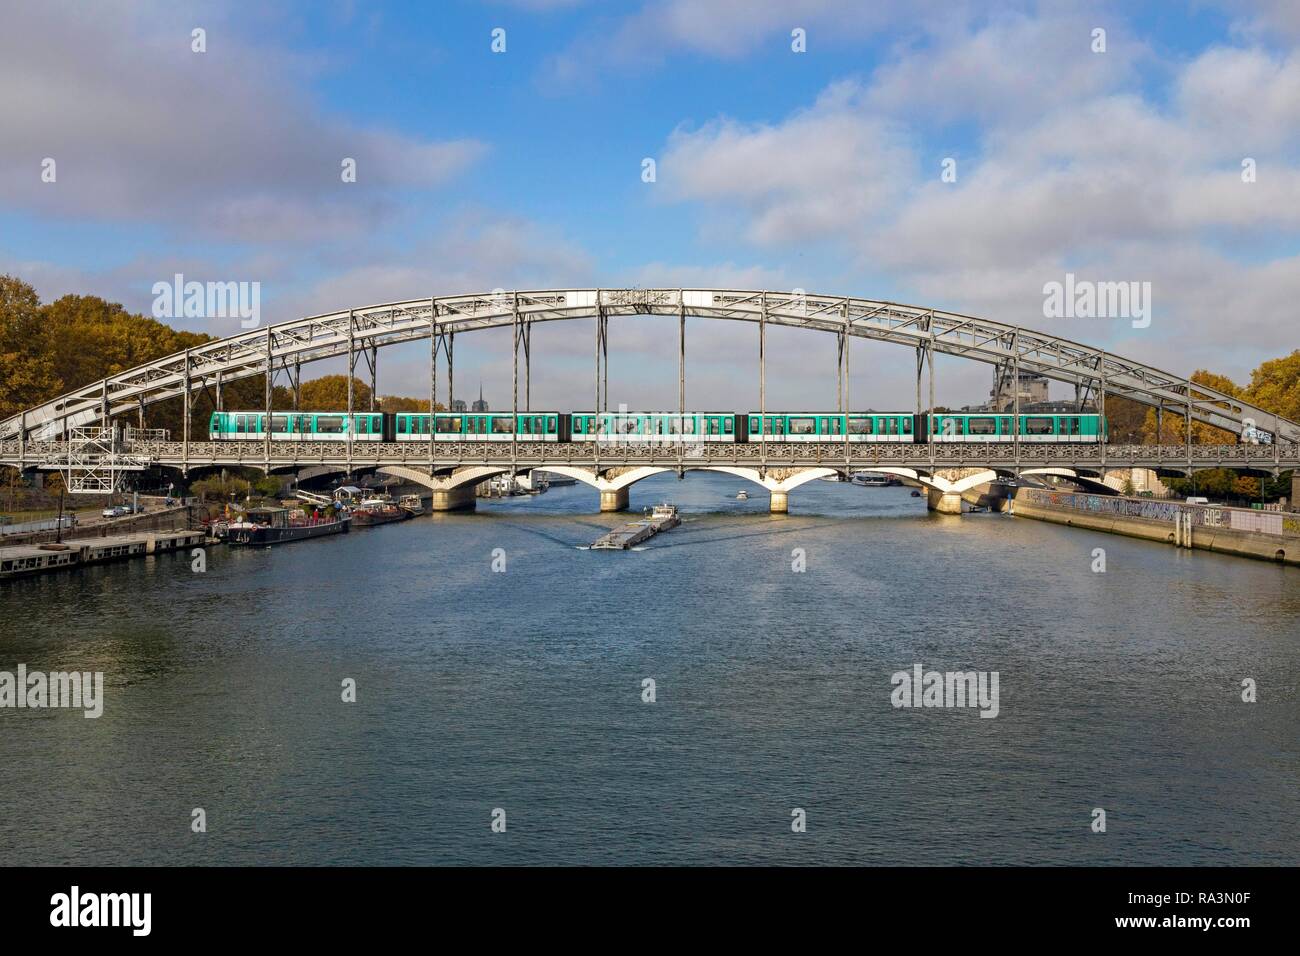 Le métro traverse la Seine sur le pont en acier, Pont d'Austerlitz, Paris, France Banque D'Images